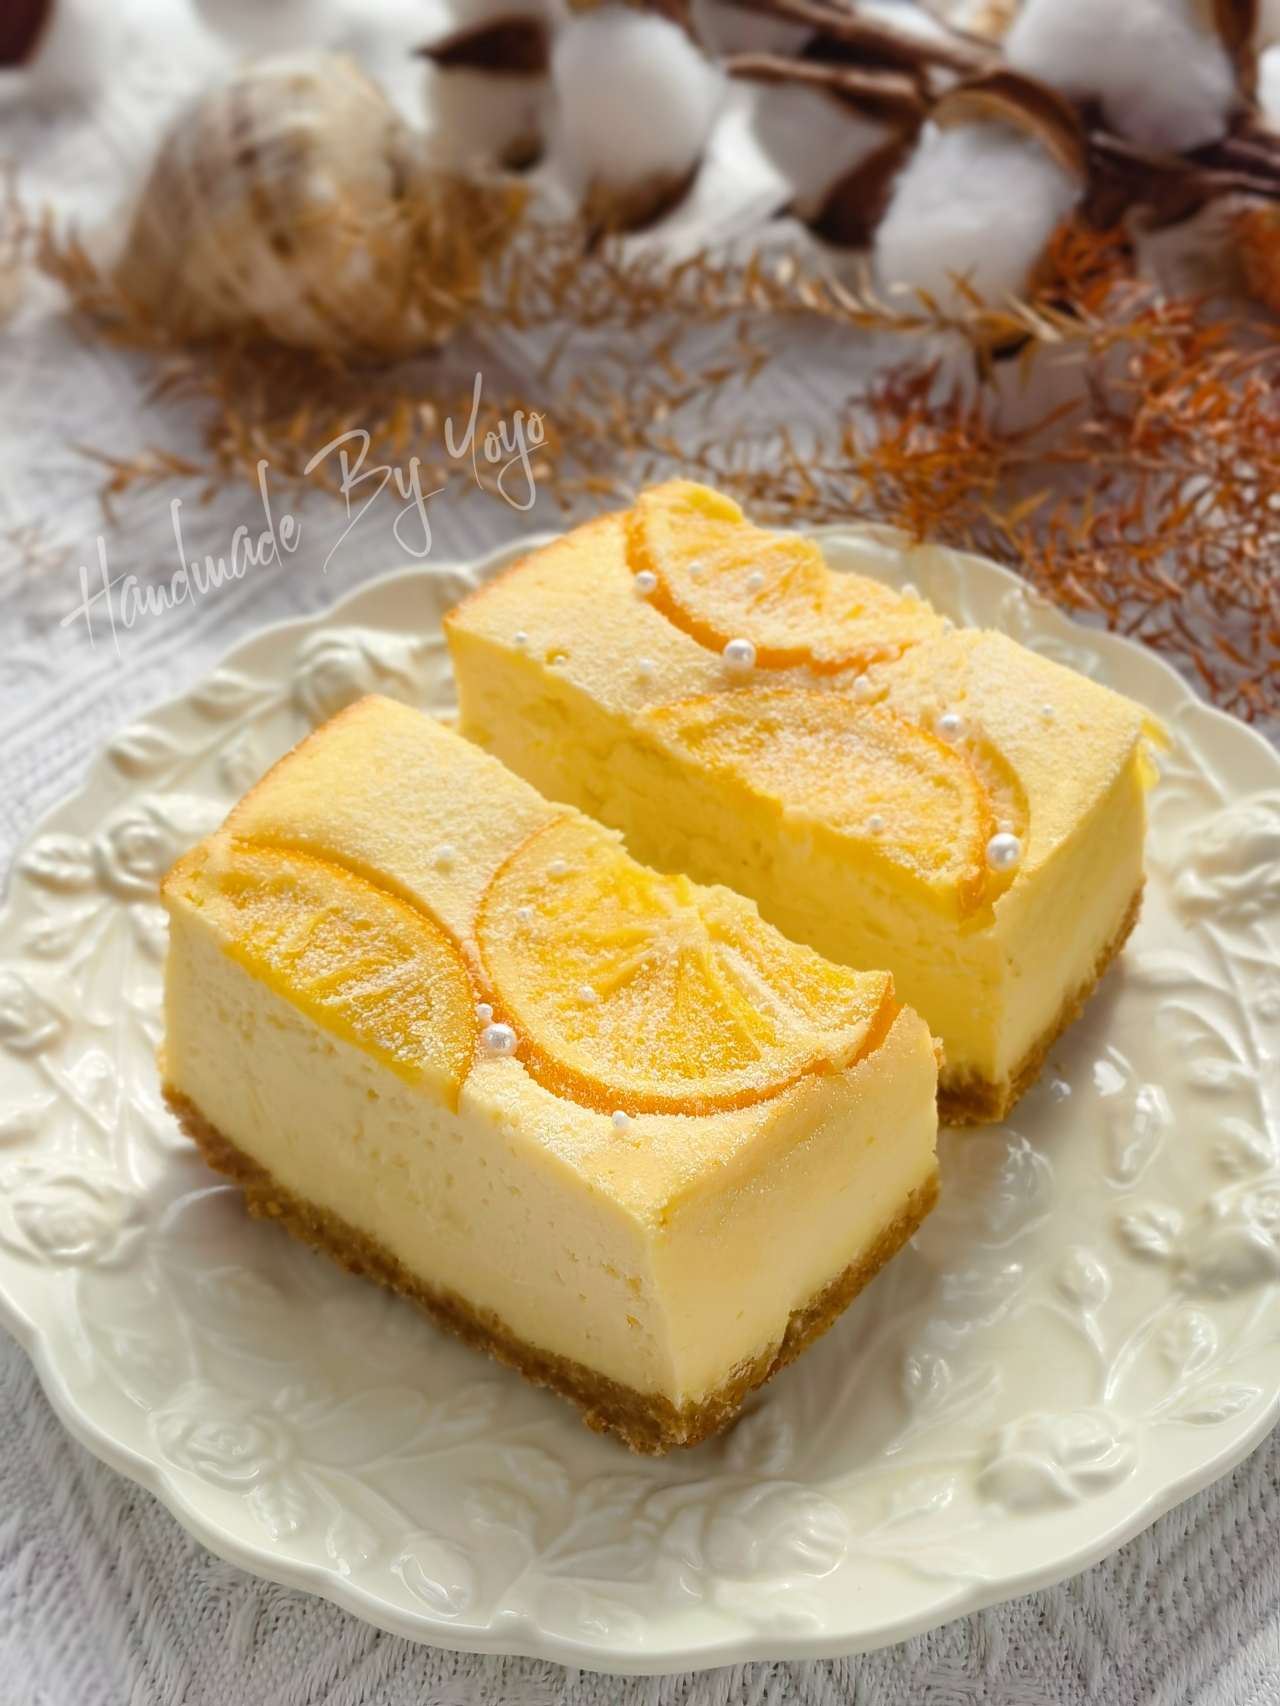 香橙酸奶芝士蛋糕❤️消耗奶油奶酪的做法